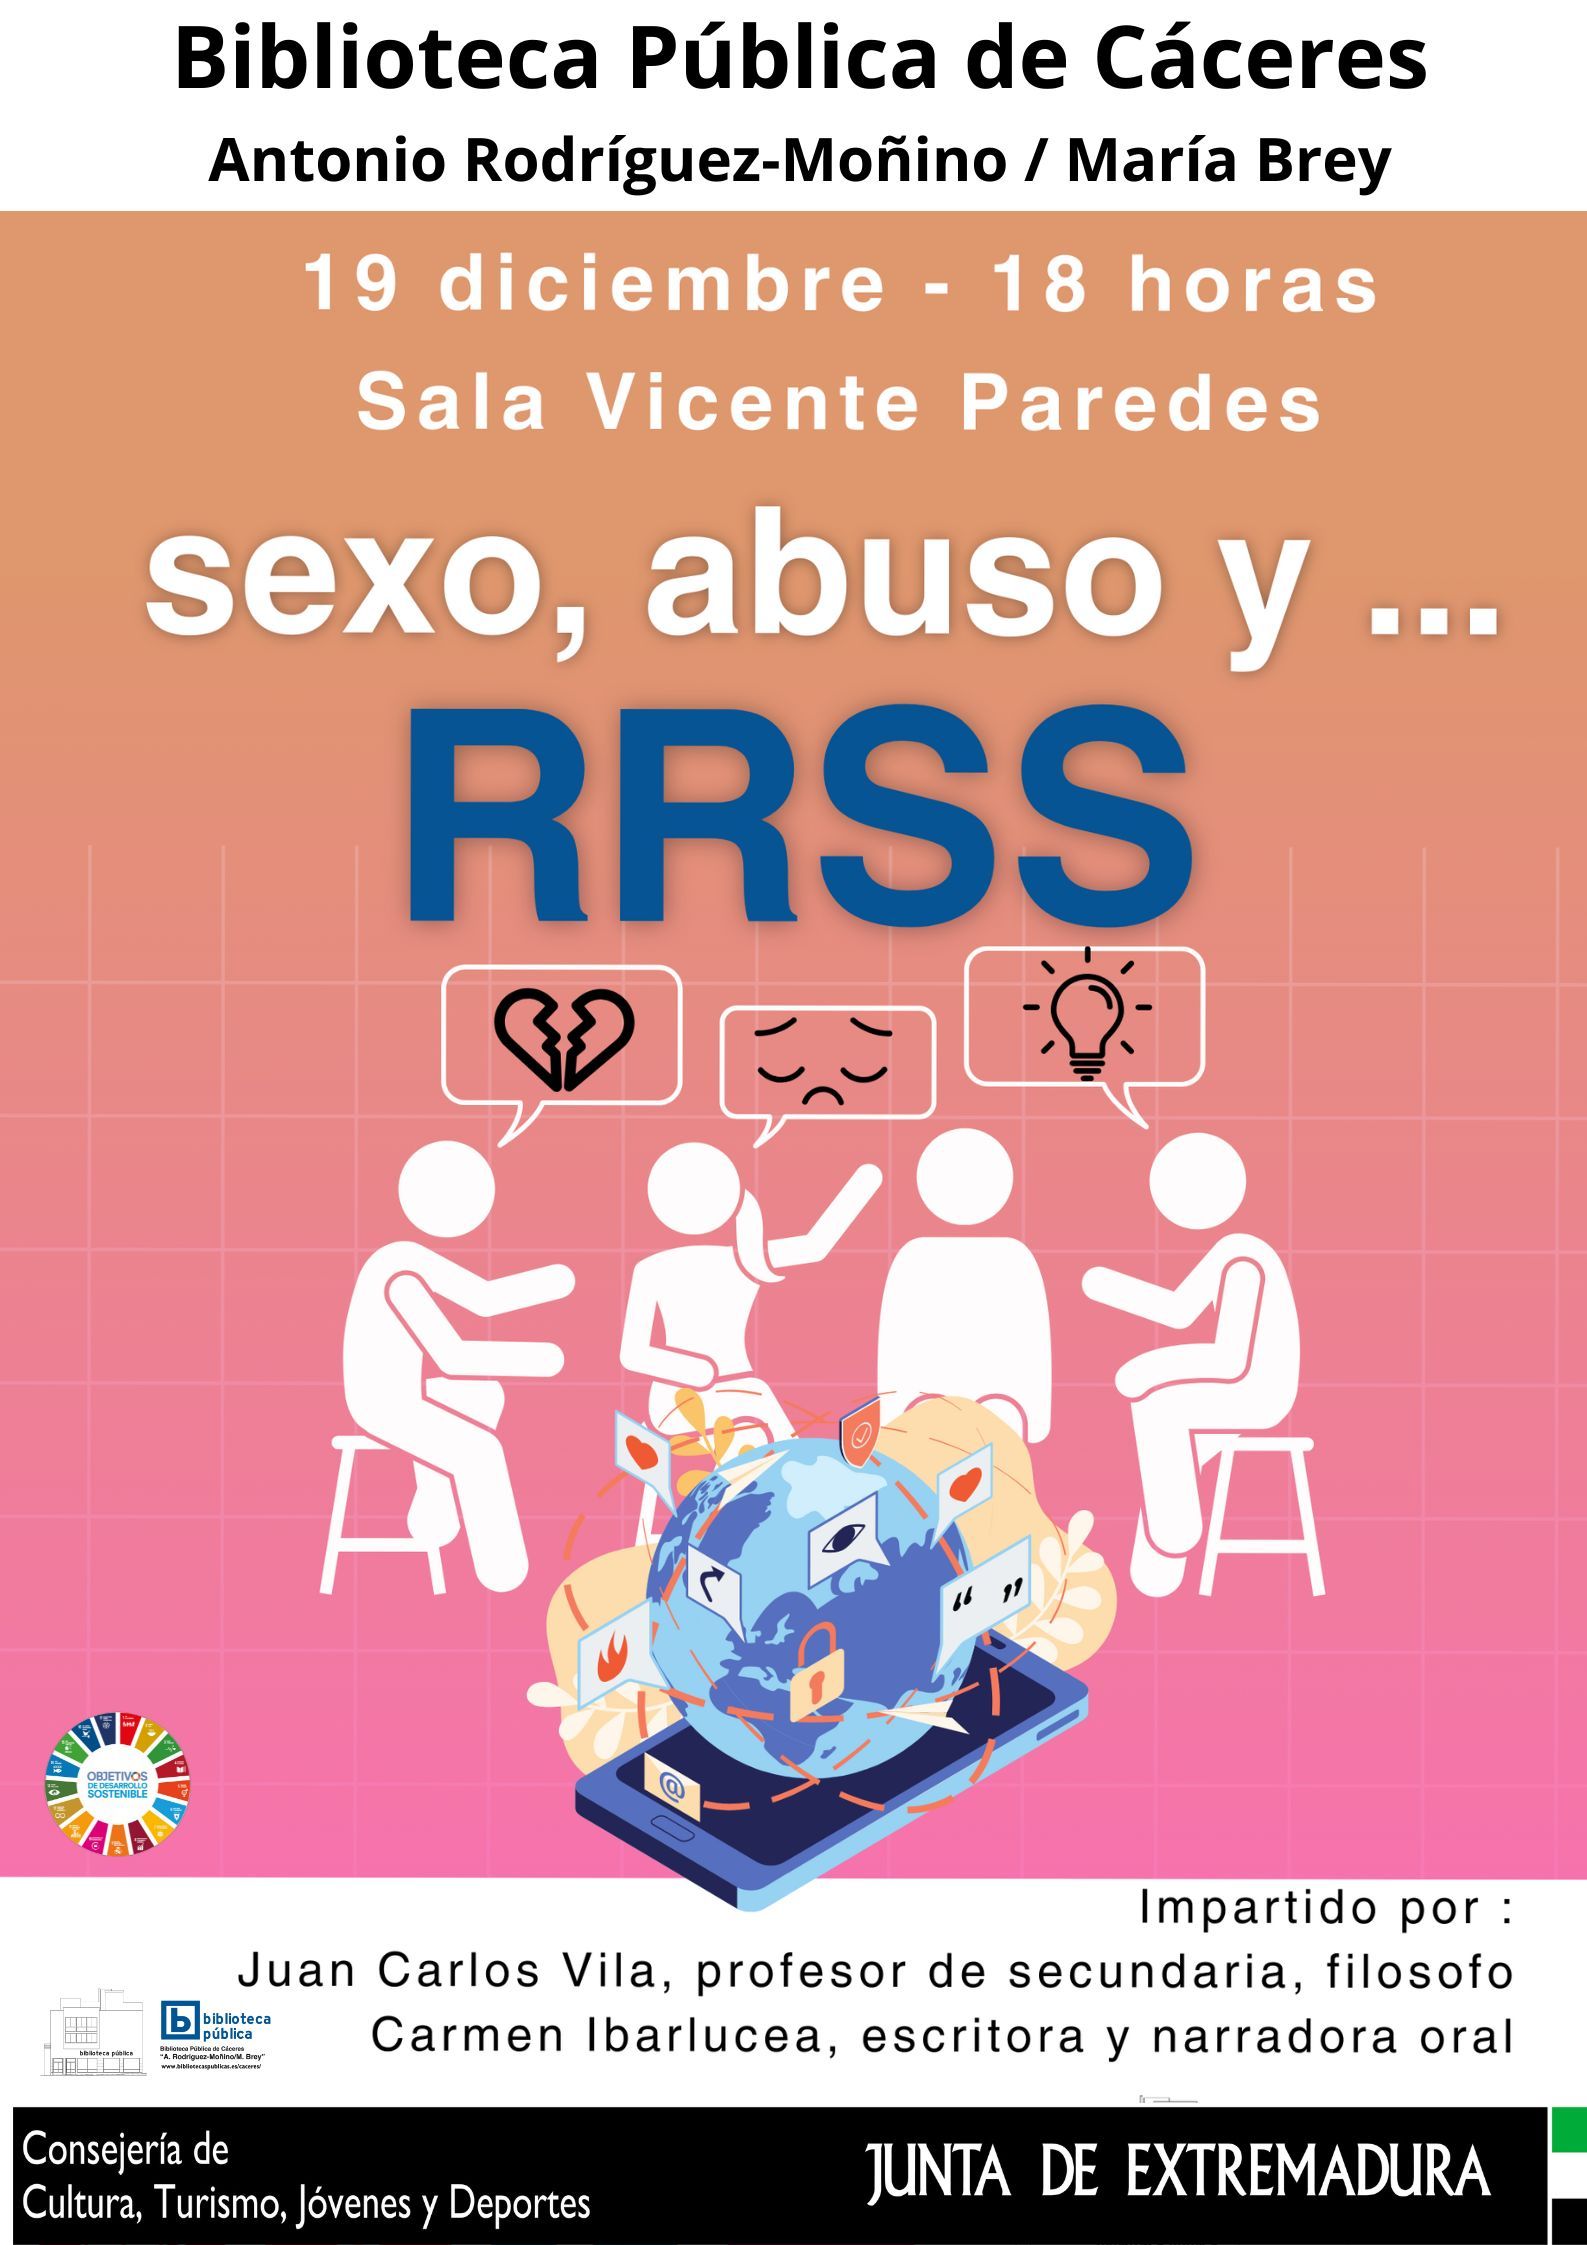 Image 1 of article La Biblioteca de Cáceres imparte este martes un taller de identificación y prevención de abusos en redes sociales